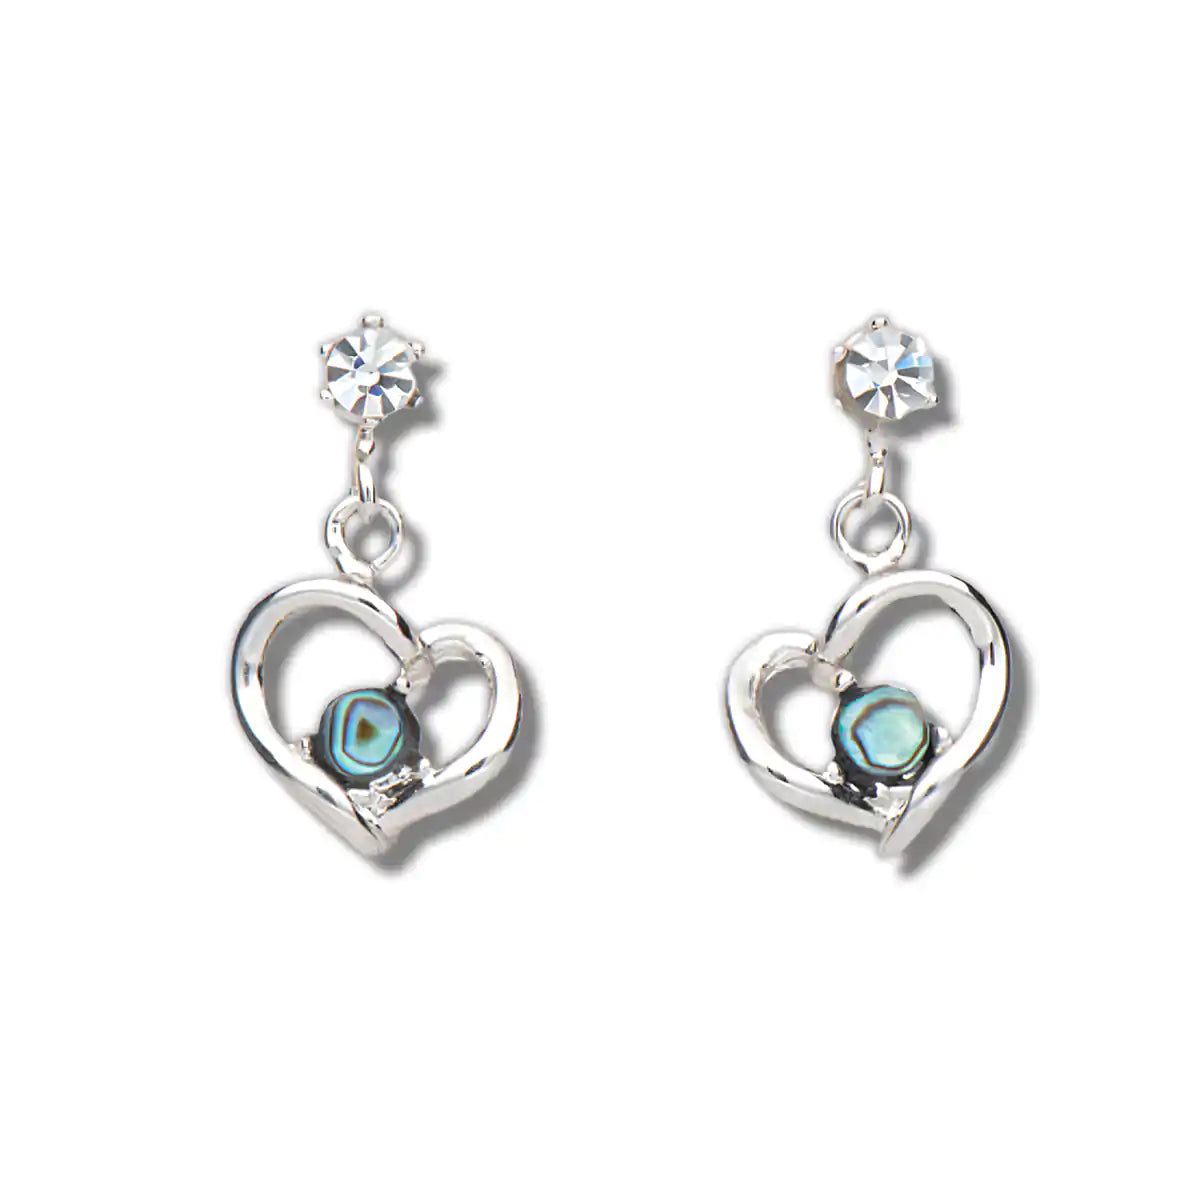 Glacier pearle loving memento earrings